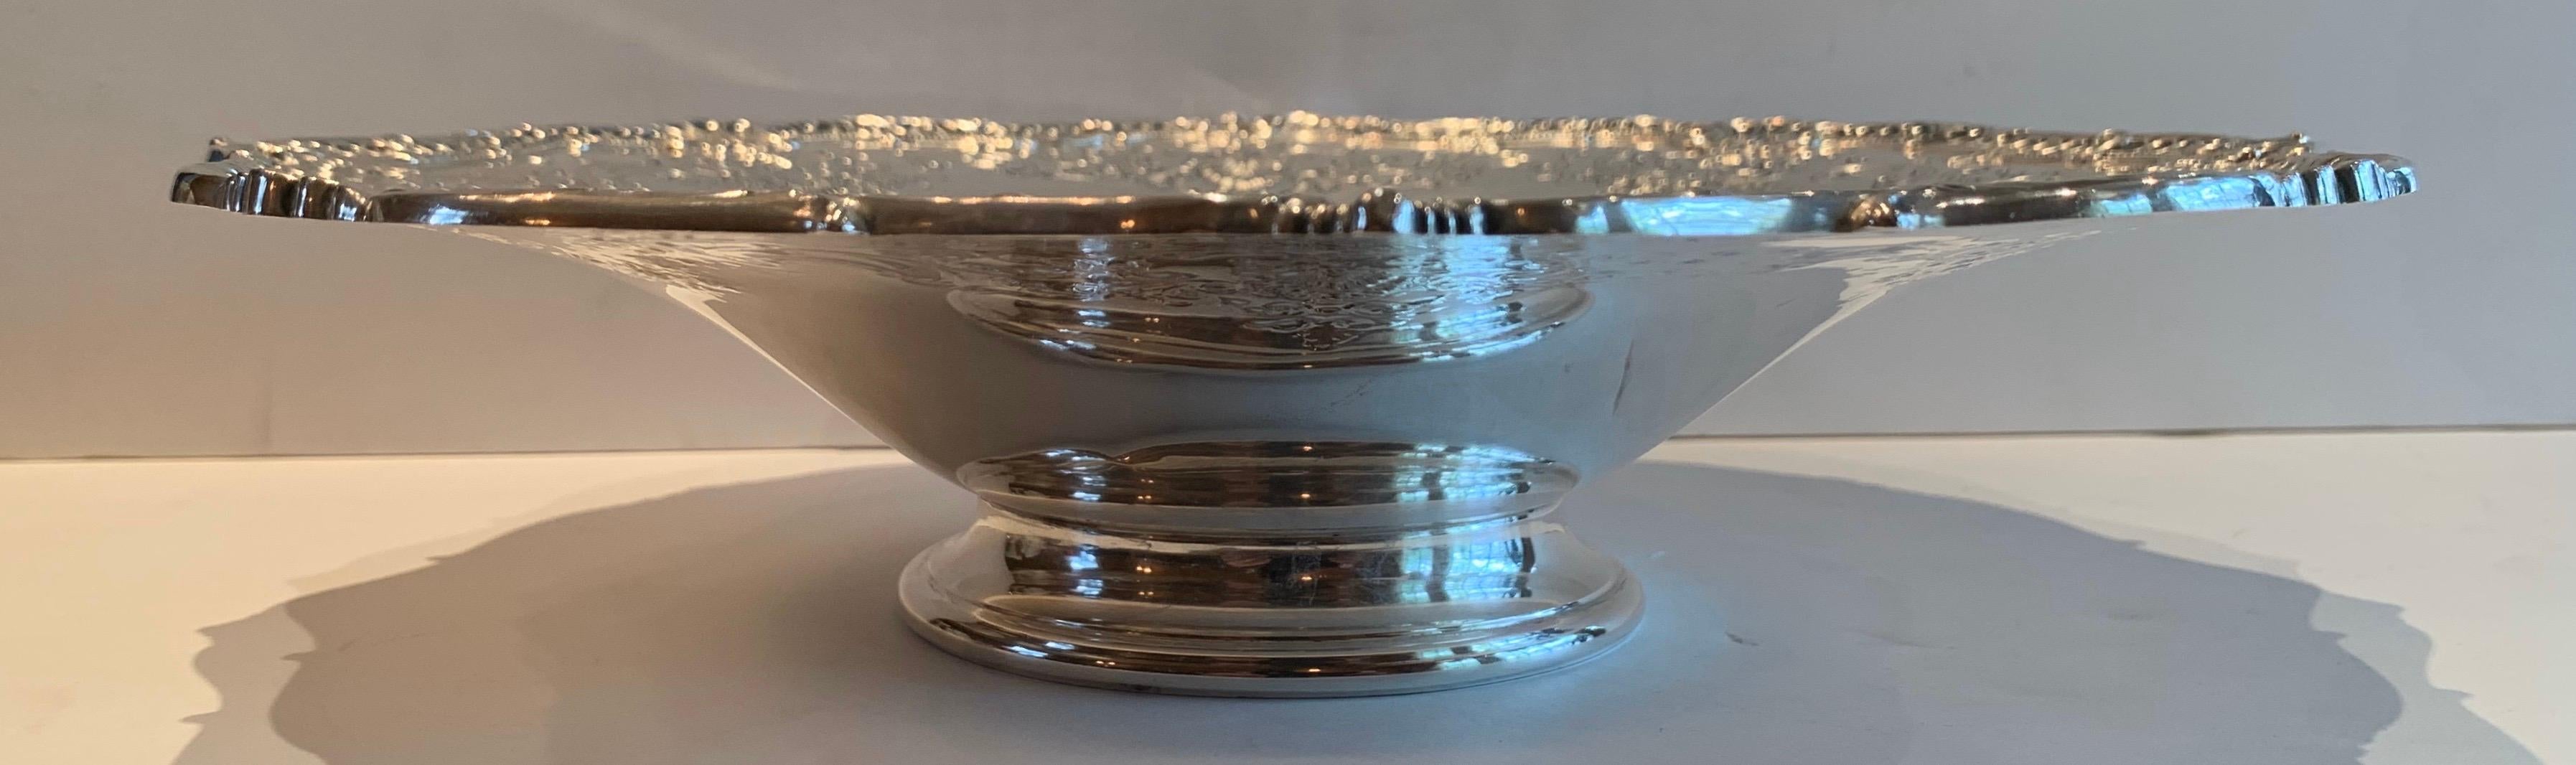 Eine wunderbare Sterling Silber Blume Sockel Schale Platte mit sehr feinen Details.